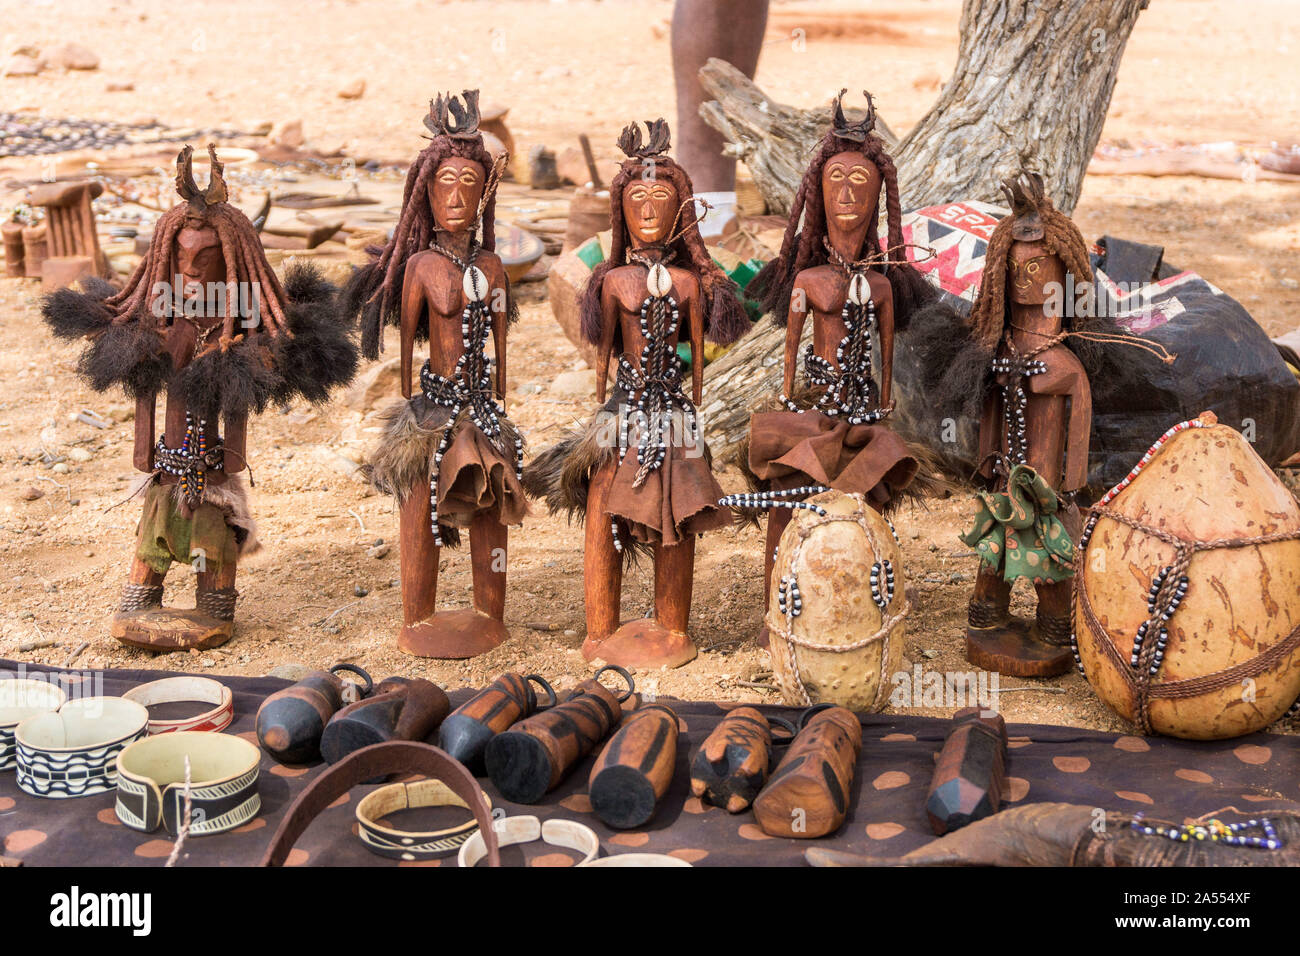 Marionnettes en bois, bijoux traditionnels, l'artisanat fait par les gens,  Kaokoland Himba, Namibie, Afrique Photo Stock - Alamy